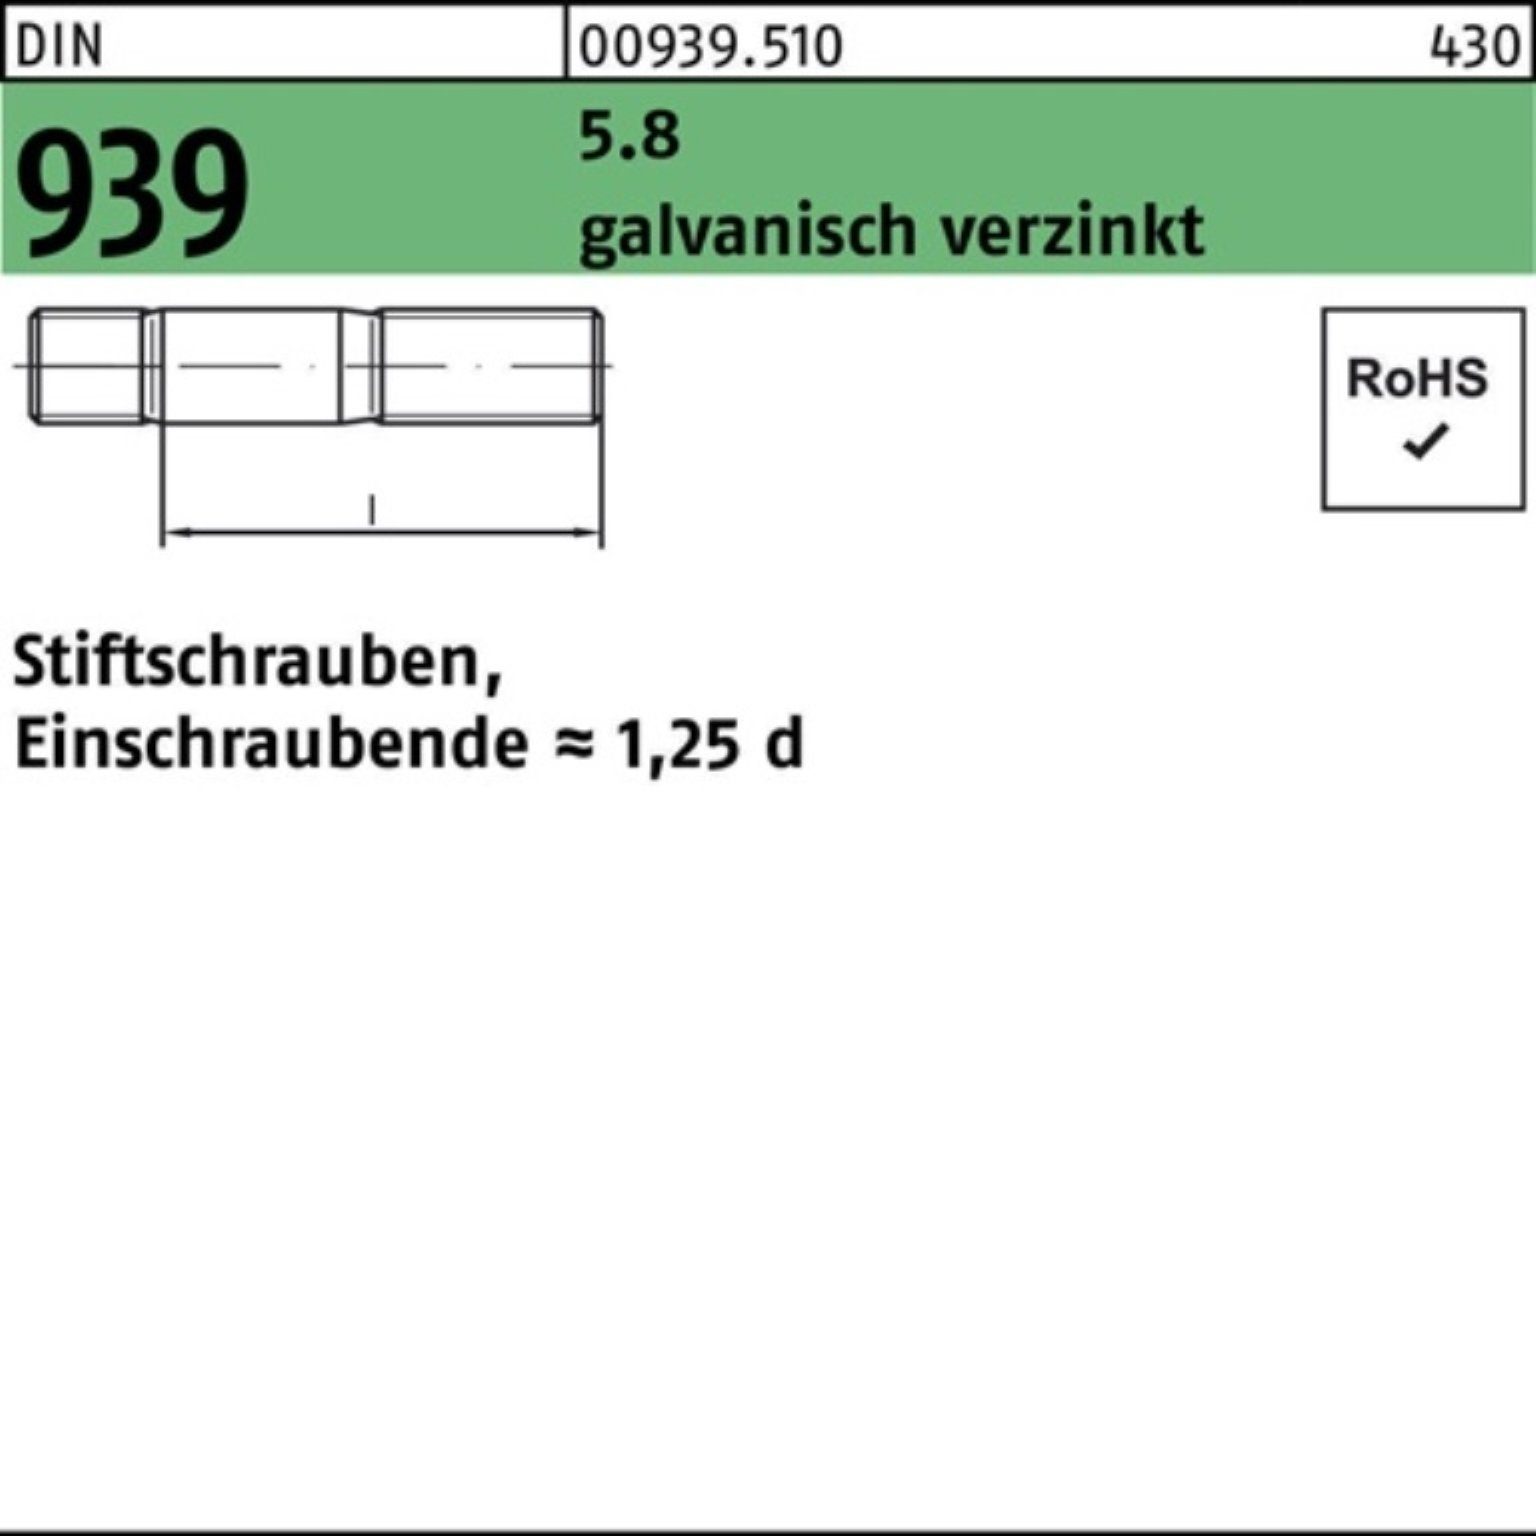 Reyher Stiftschraube Einschraubende= galv.verz. Stiftschraube 939 Pack 100er M16x90 DIN 5.8